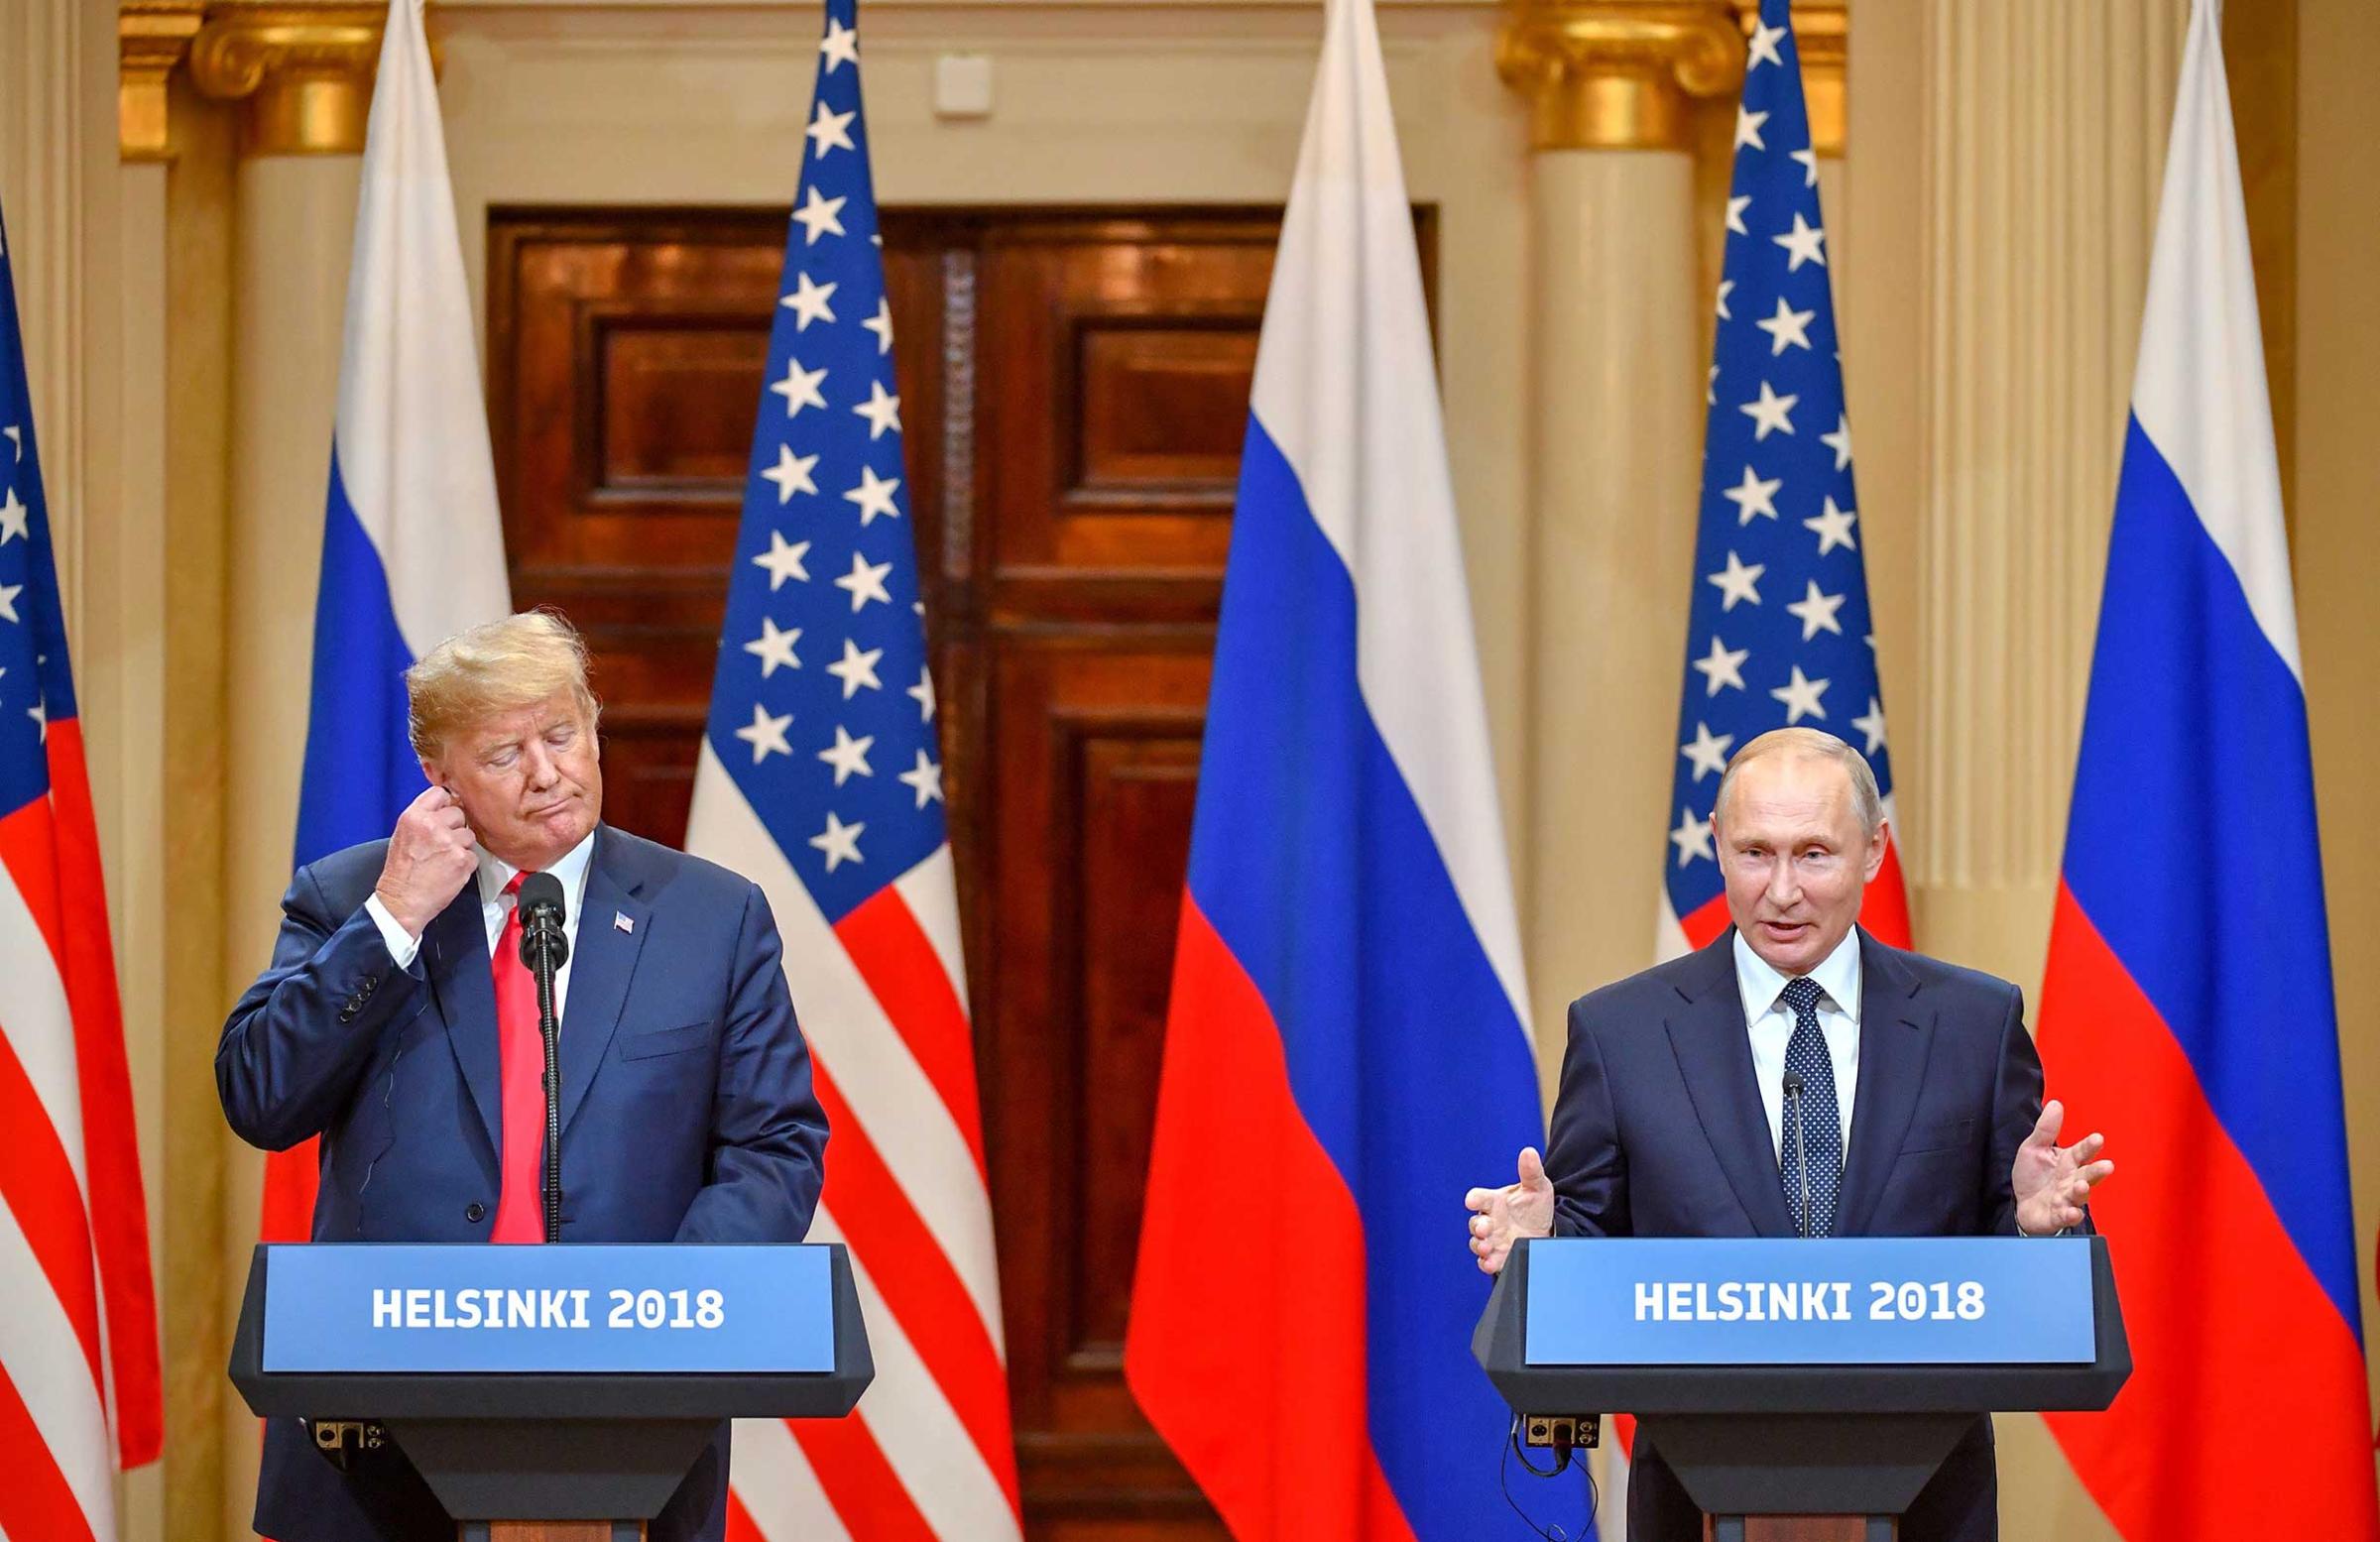 Trump and Putin attend Helsinki summit